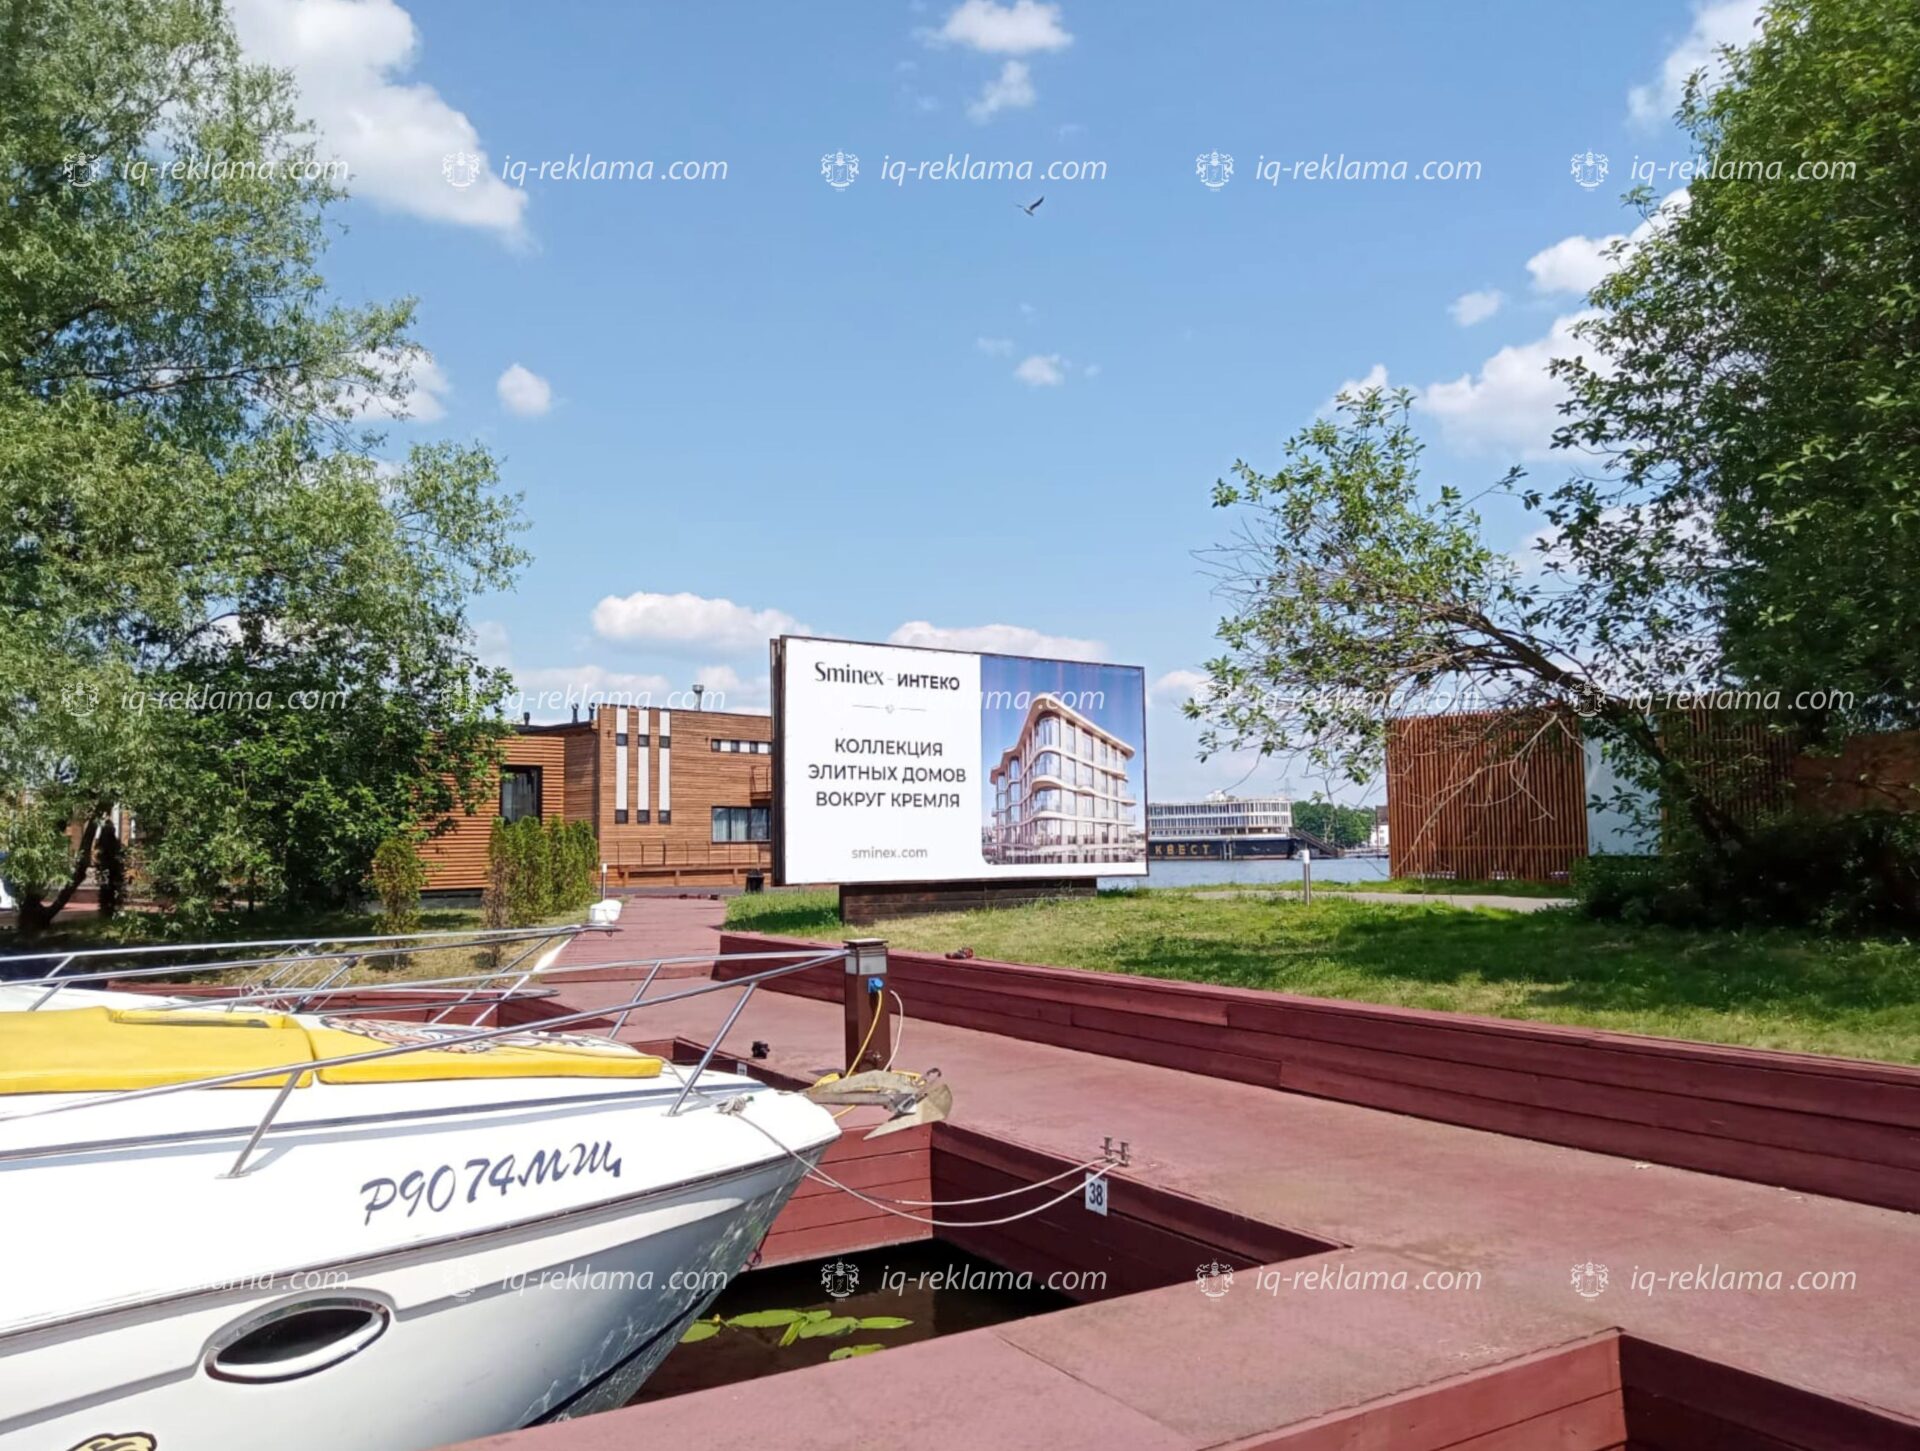 Наружная реклама на билбордах в Москве элитной недвижимости «Sminex-Интеко»